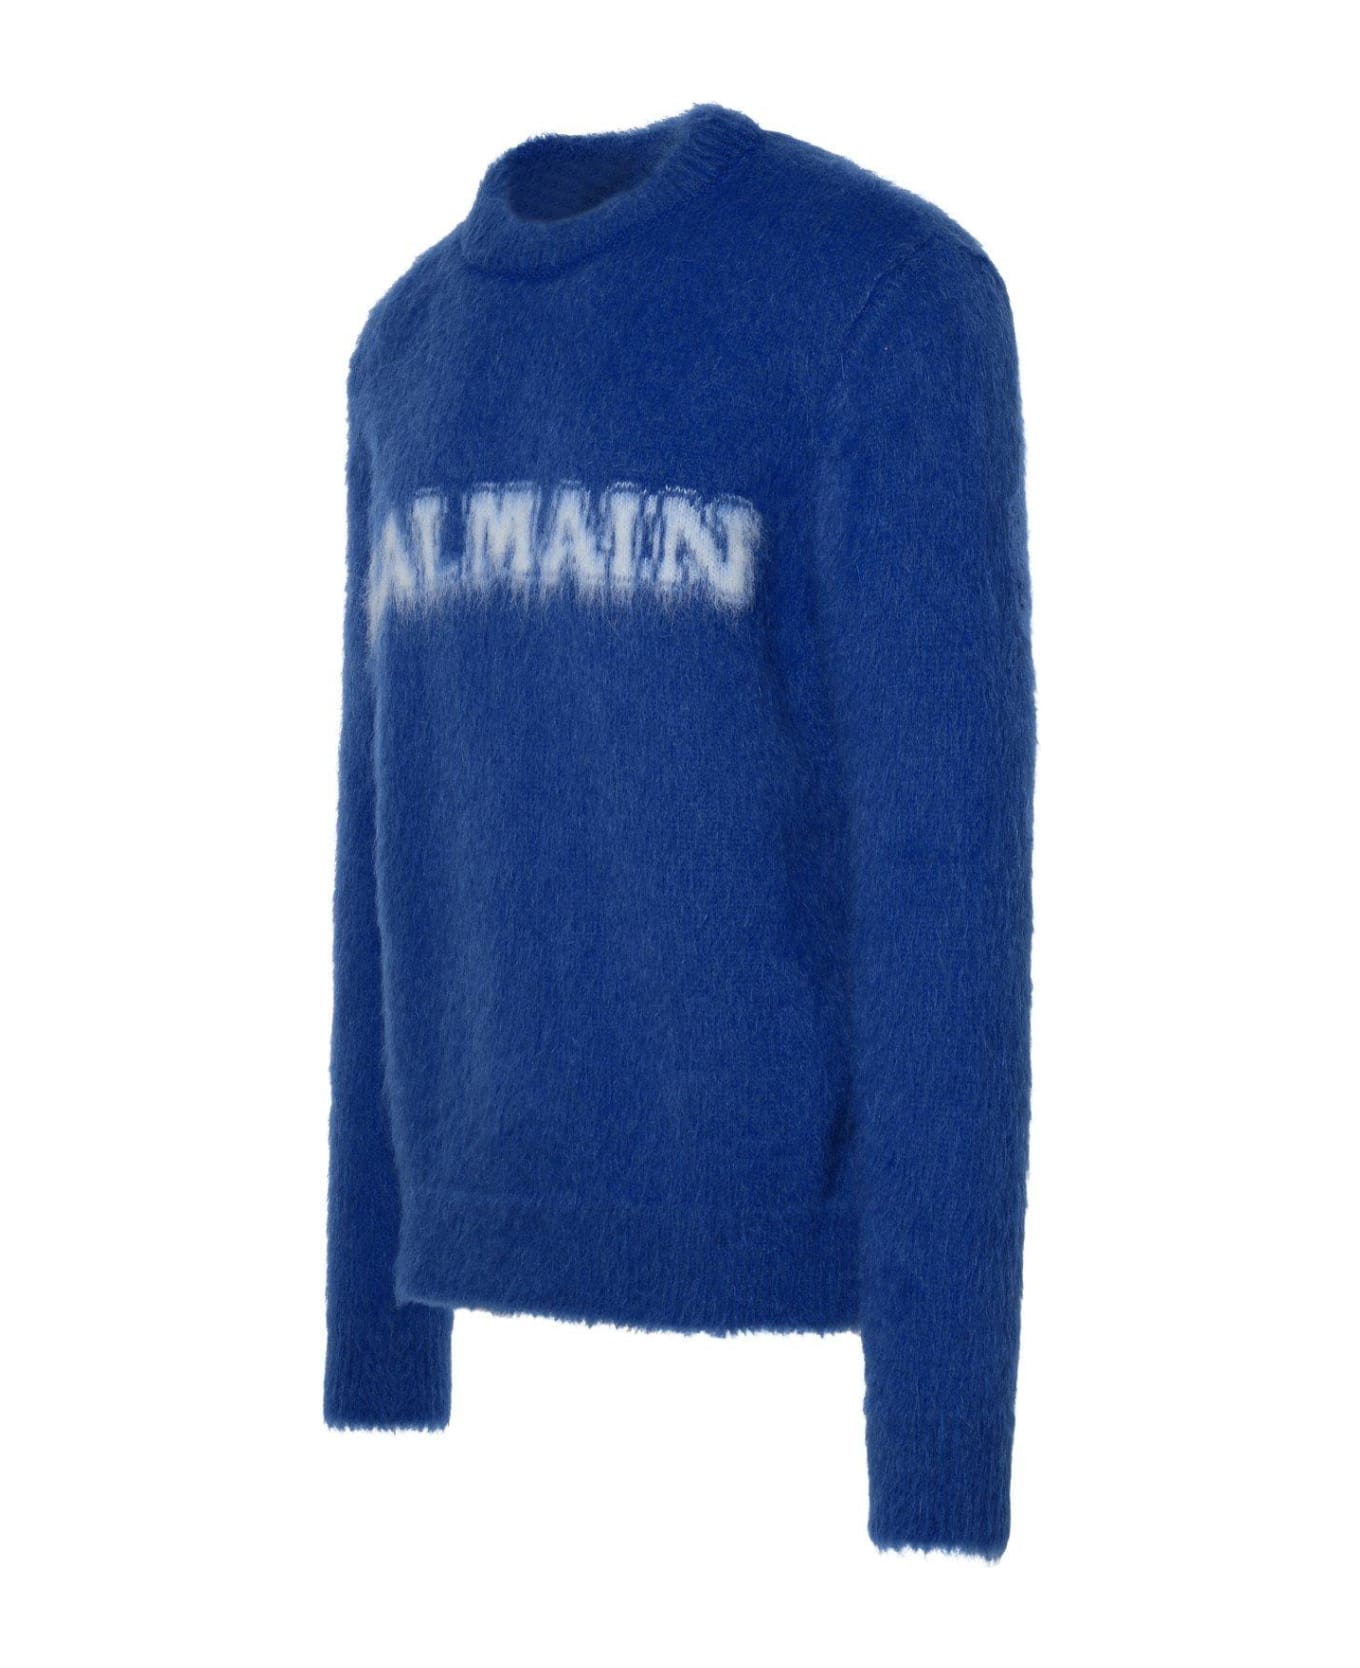 Balmain Brushed Mohair Sweater - Siu Cobalt Blanc